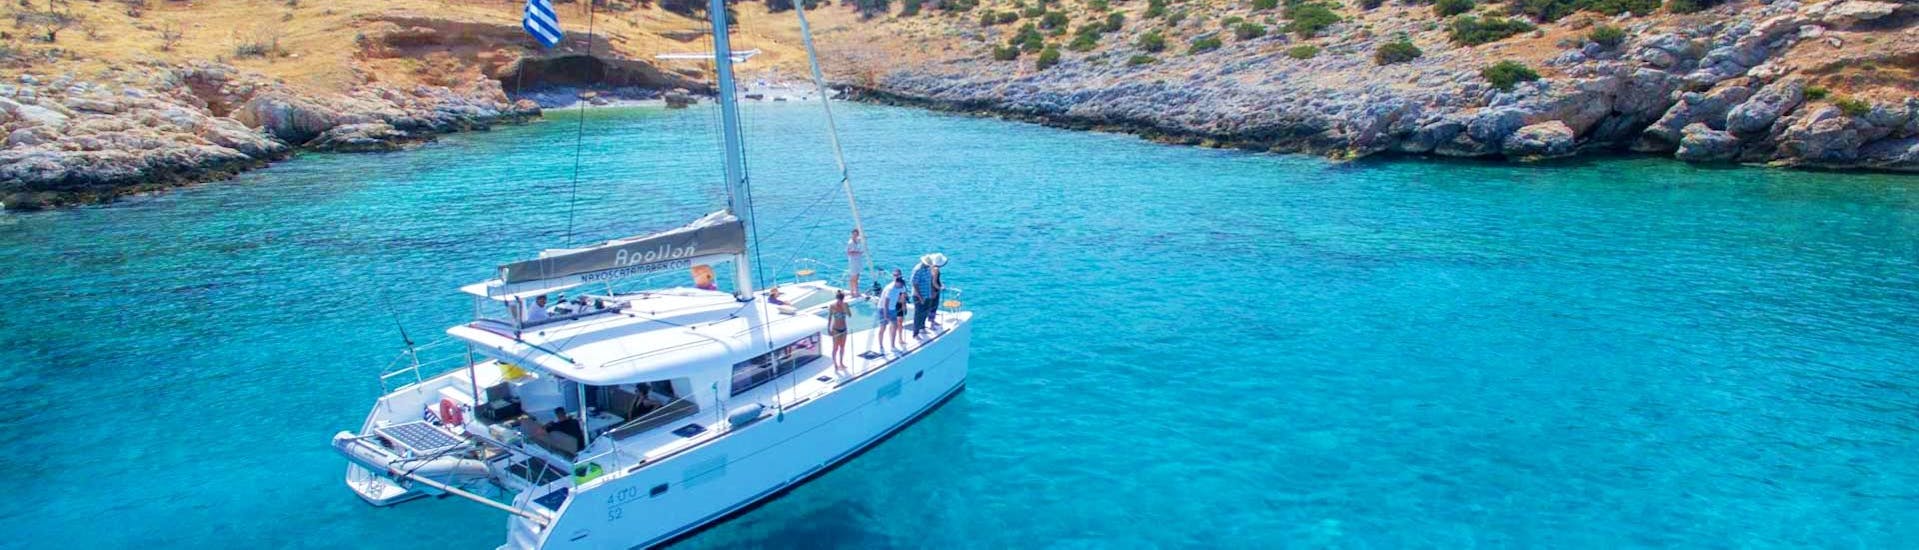 Der Katamaran Apollon von Naxos Catamaran segelt während der privaten Segeltour auf einem Luxuskatamaran von Naxos entlang der felsigen Küste der Kykladen.